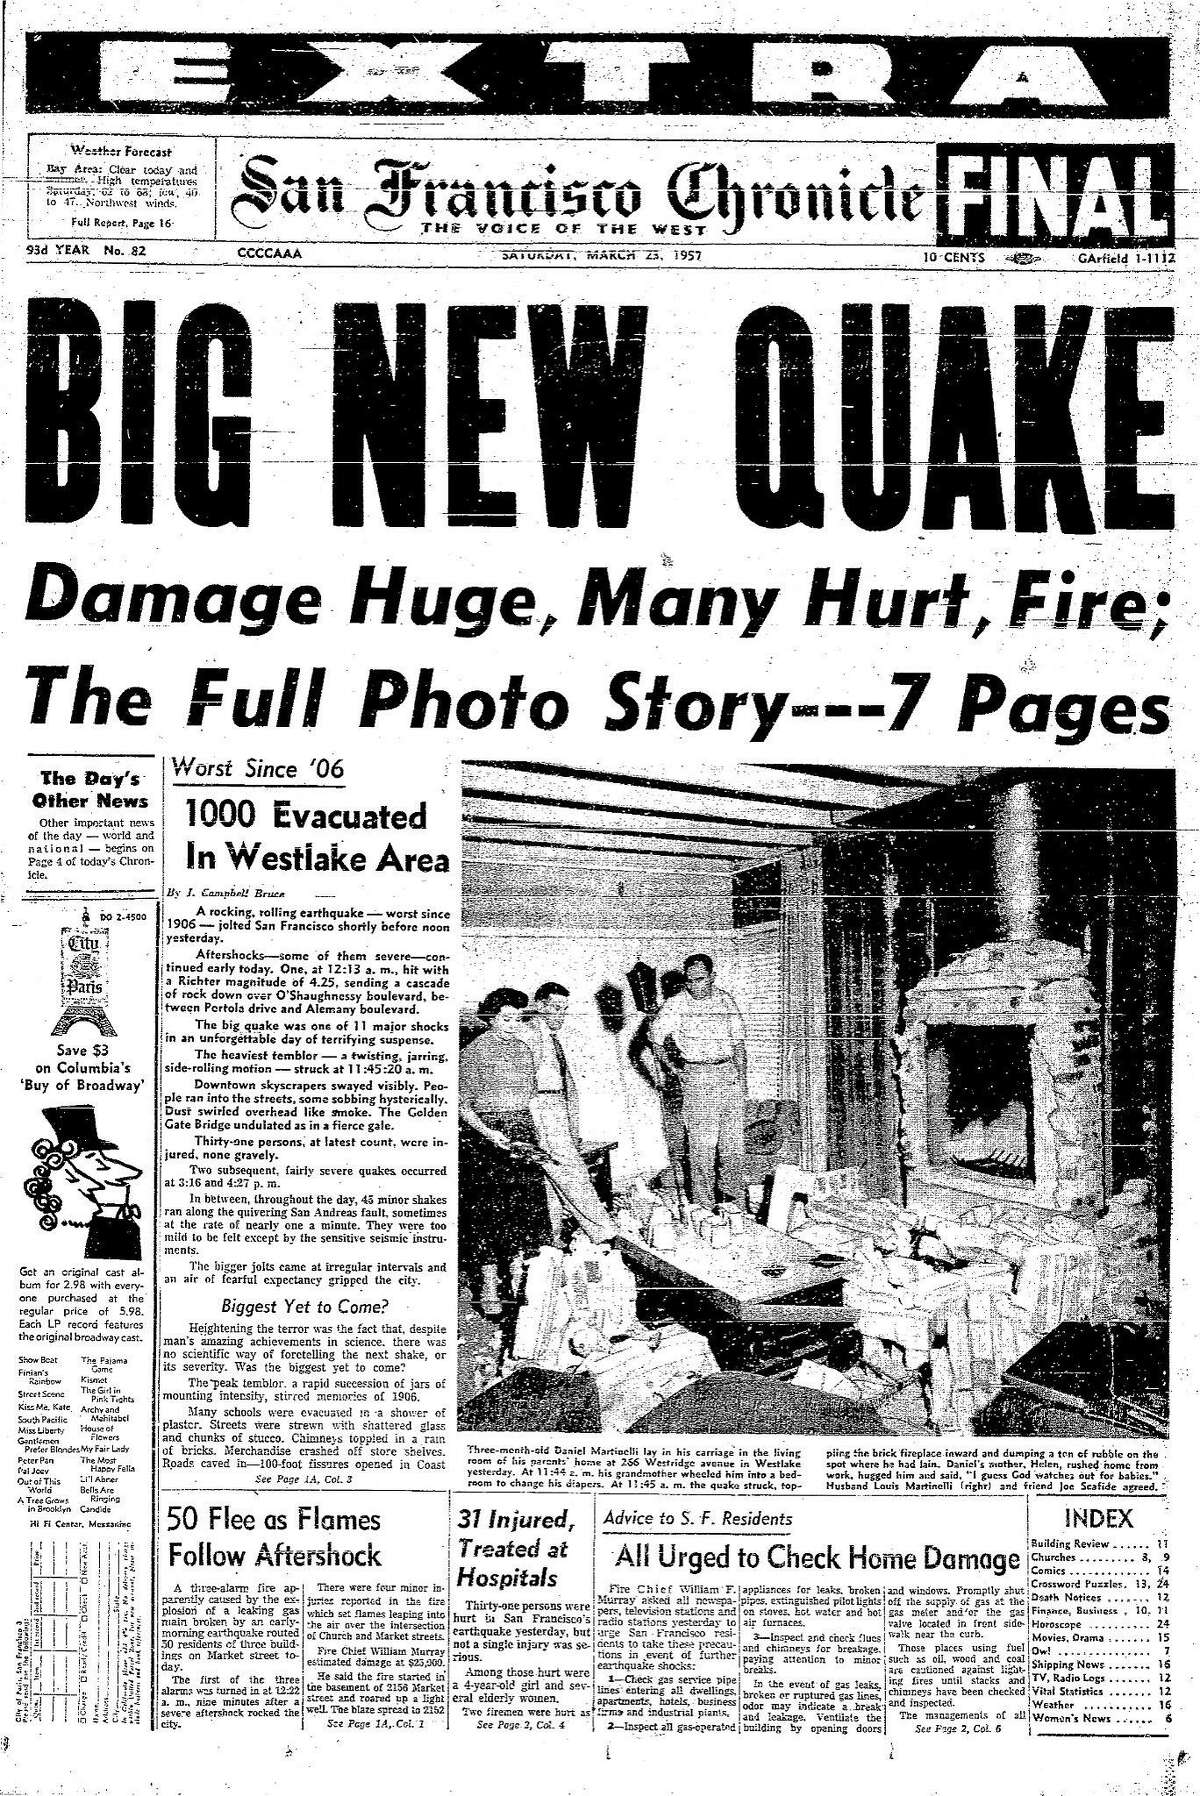 1957年3月23日，《纪事报》头版，也就是5.3级地震造成大范围破坏的第二天